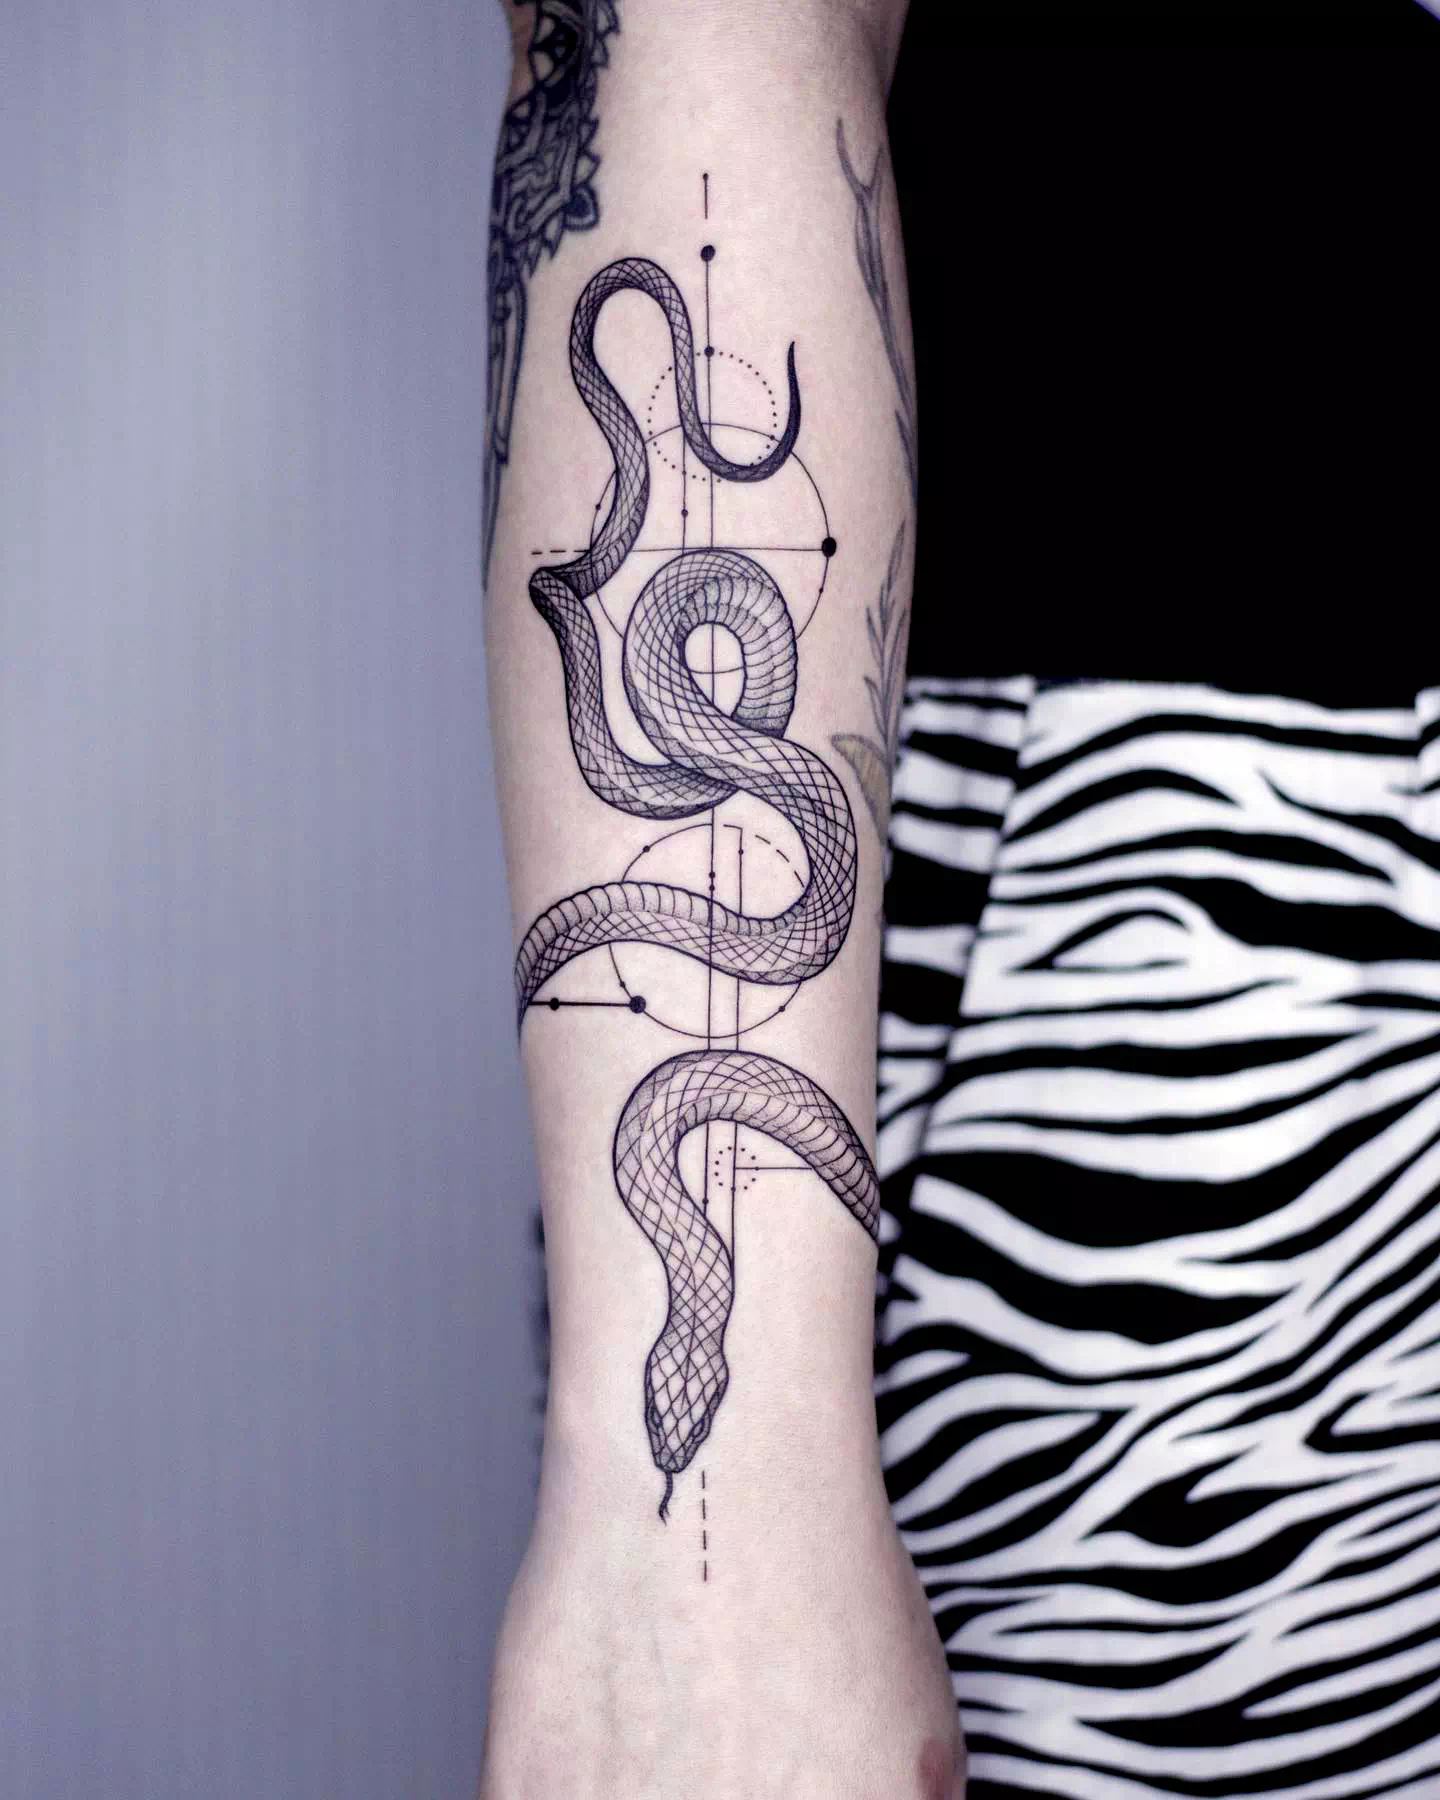 Tatuaje de pulsera inspirado en una serpiente